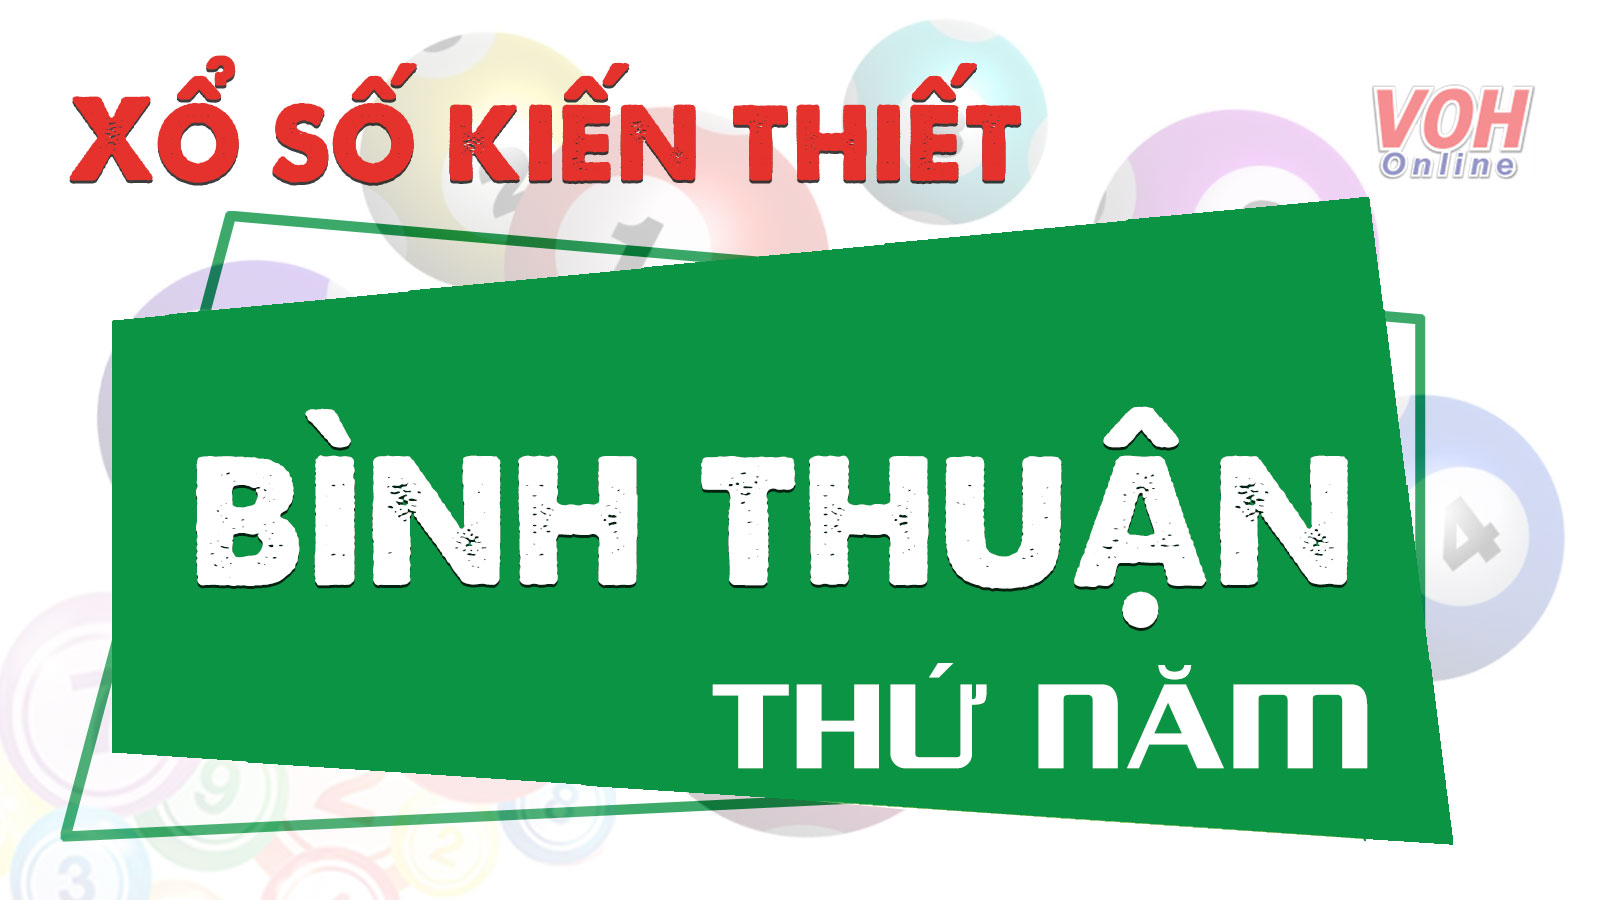 Kết quả xổ số Bình Thuận hôm nay Thứ 5 29/4/2021 - VOH